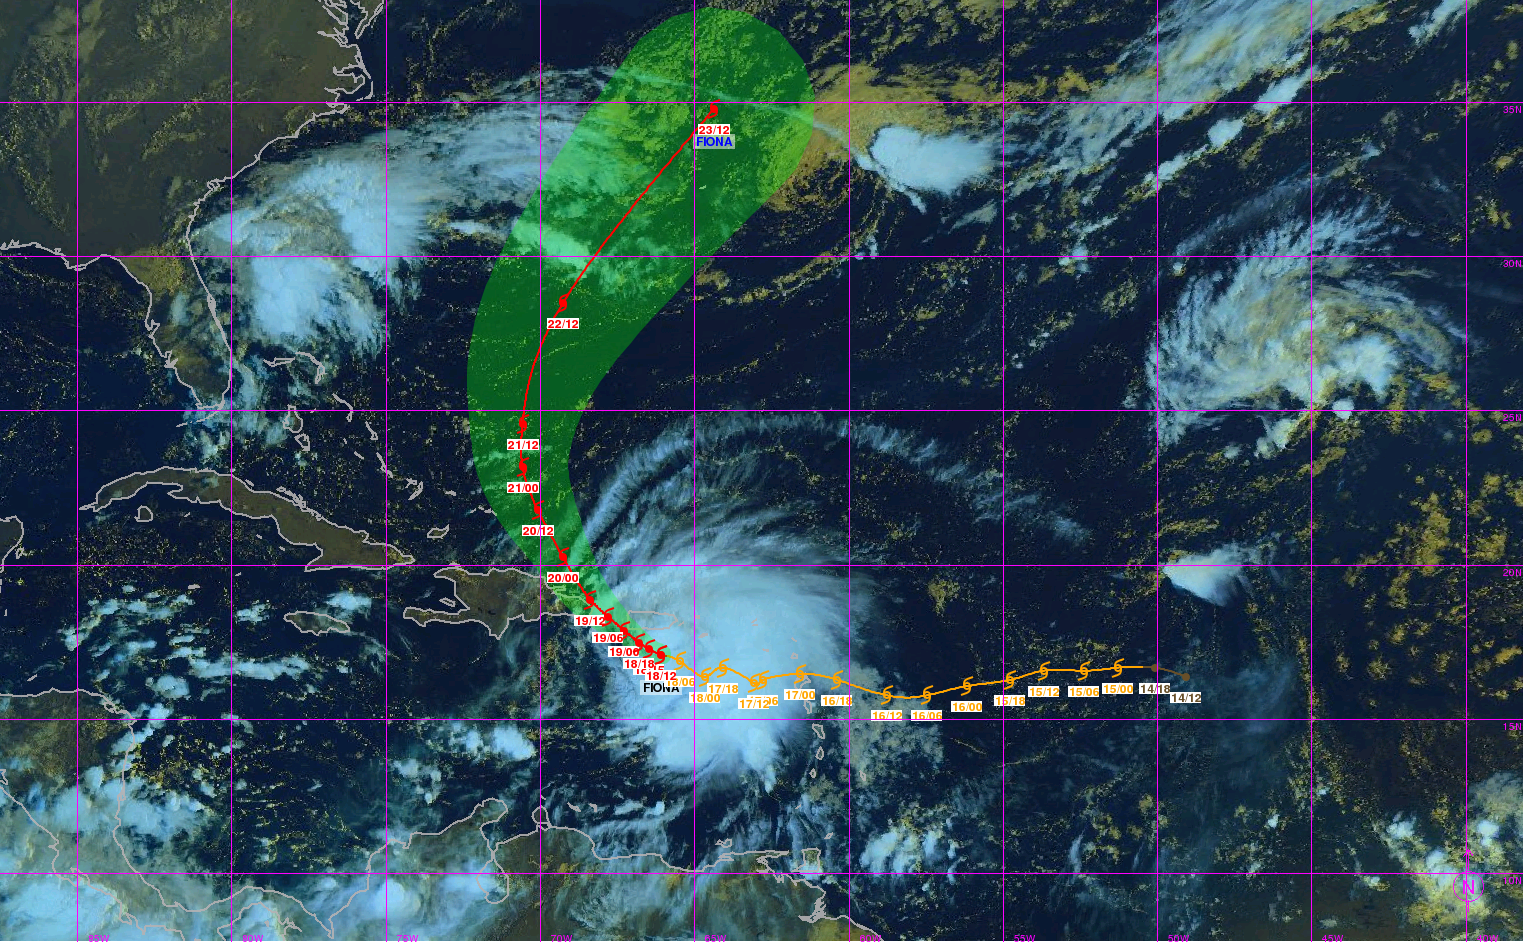     Fiona devient un ouragan selon le NHC, Porto-Rico en alerte 

